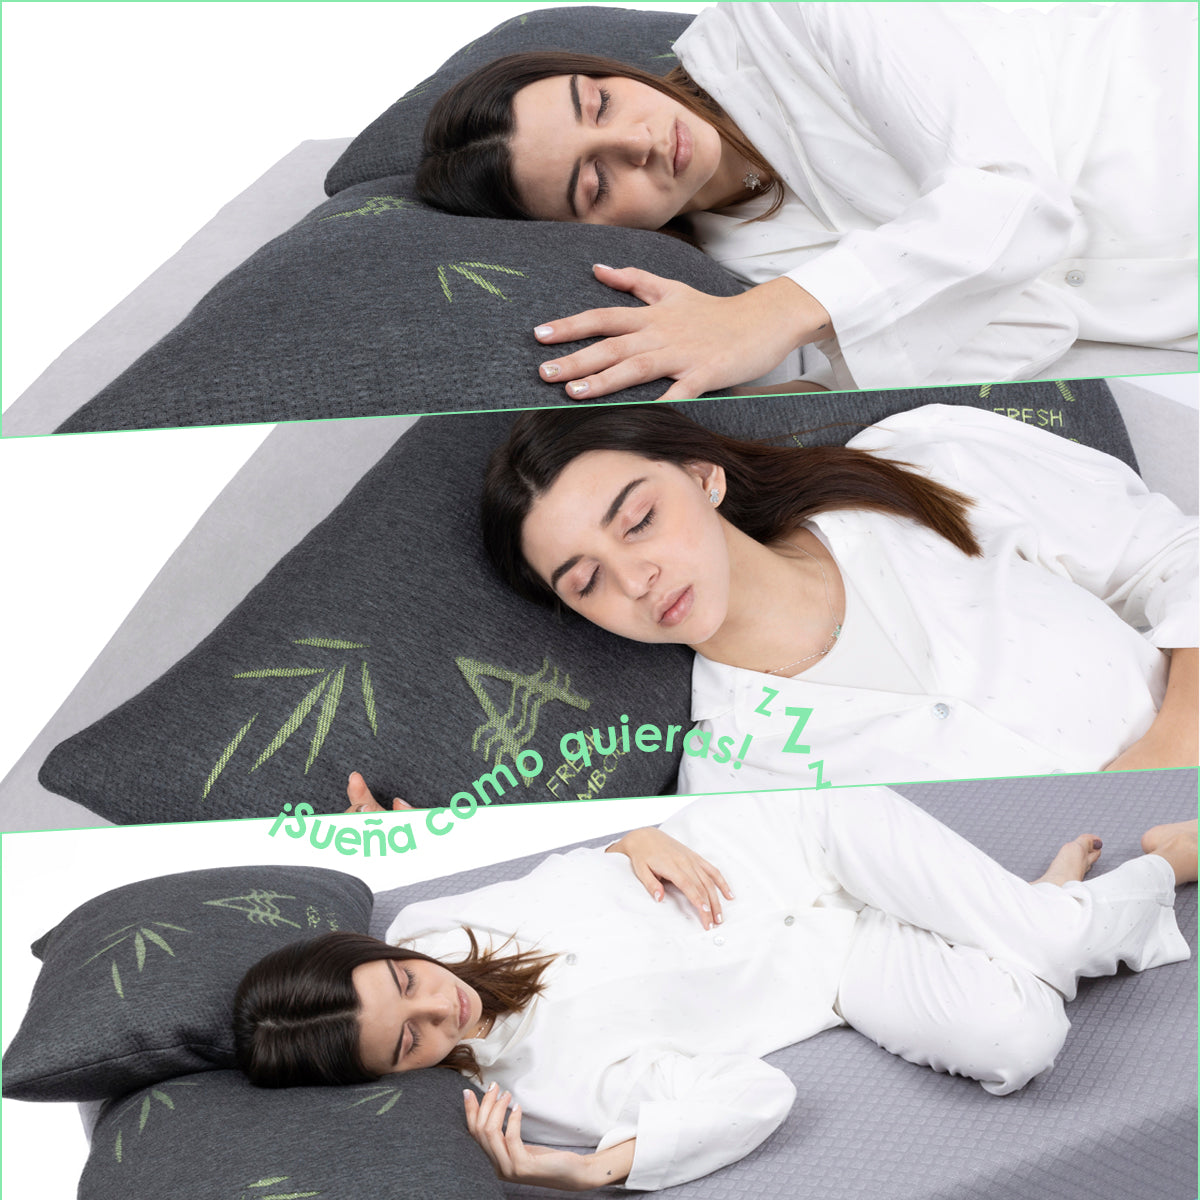 Aira Almohada Set de 2 de Bambu Relleno de Microfibra Anti acaros - AIRA SLEEP Colchones Memory Foam | Descuentos